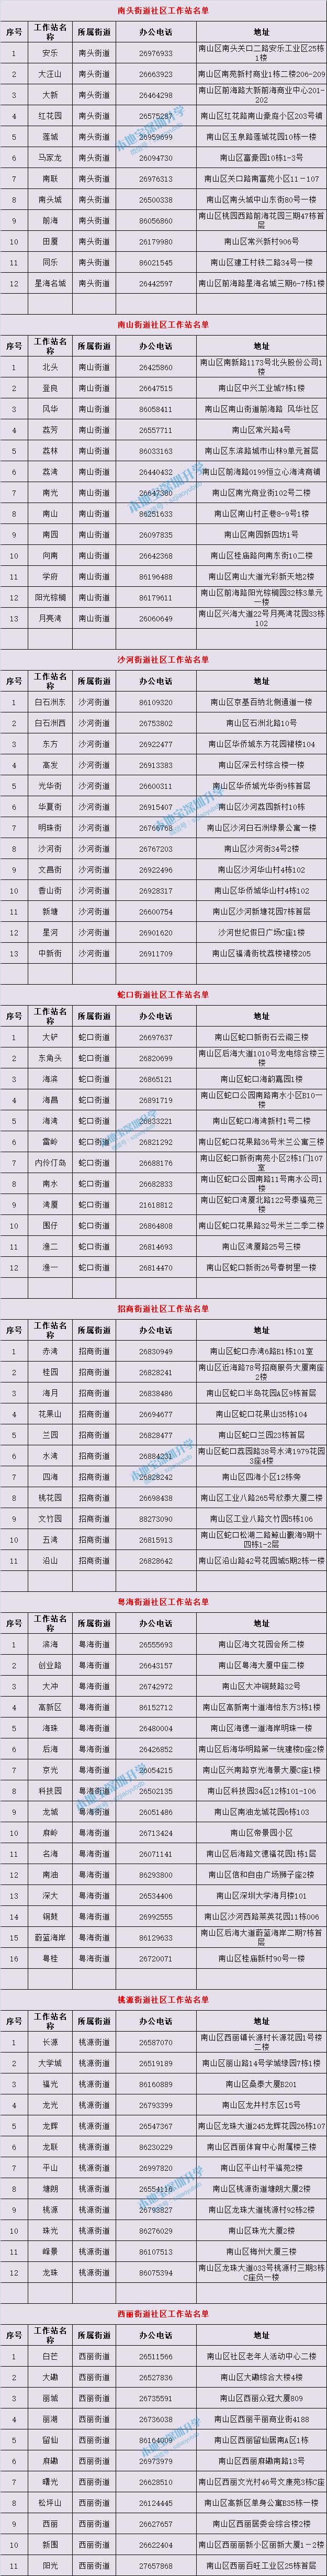 深圳10区社区工作站名单一览表 地址、咨询电话全都有